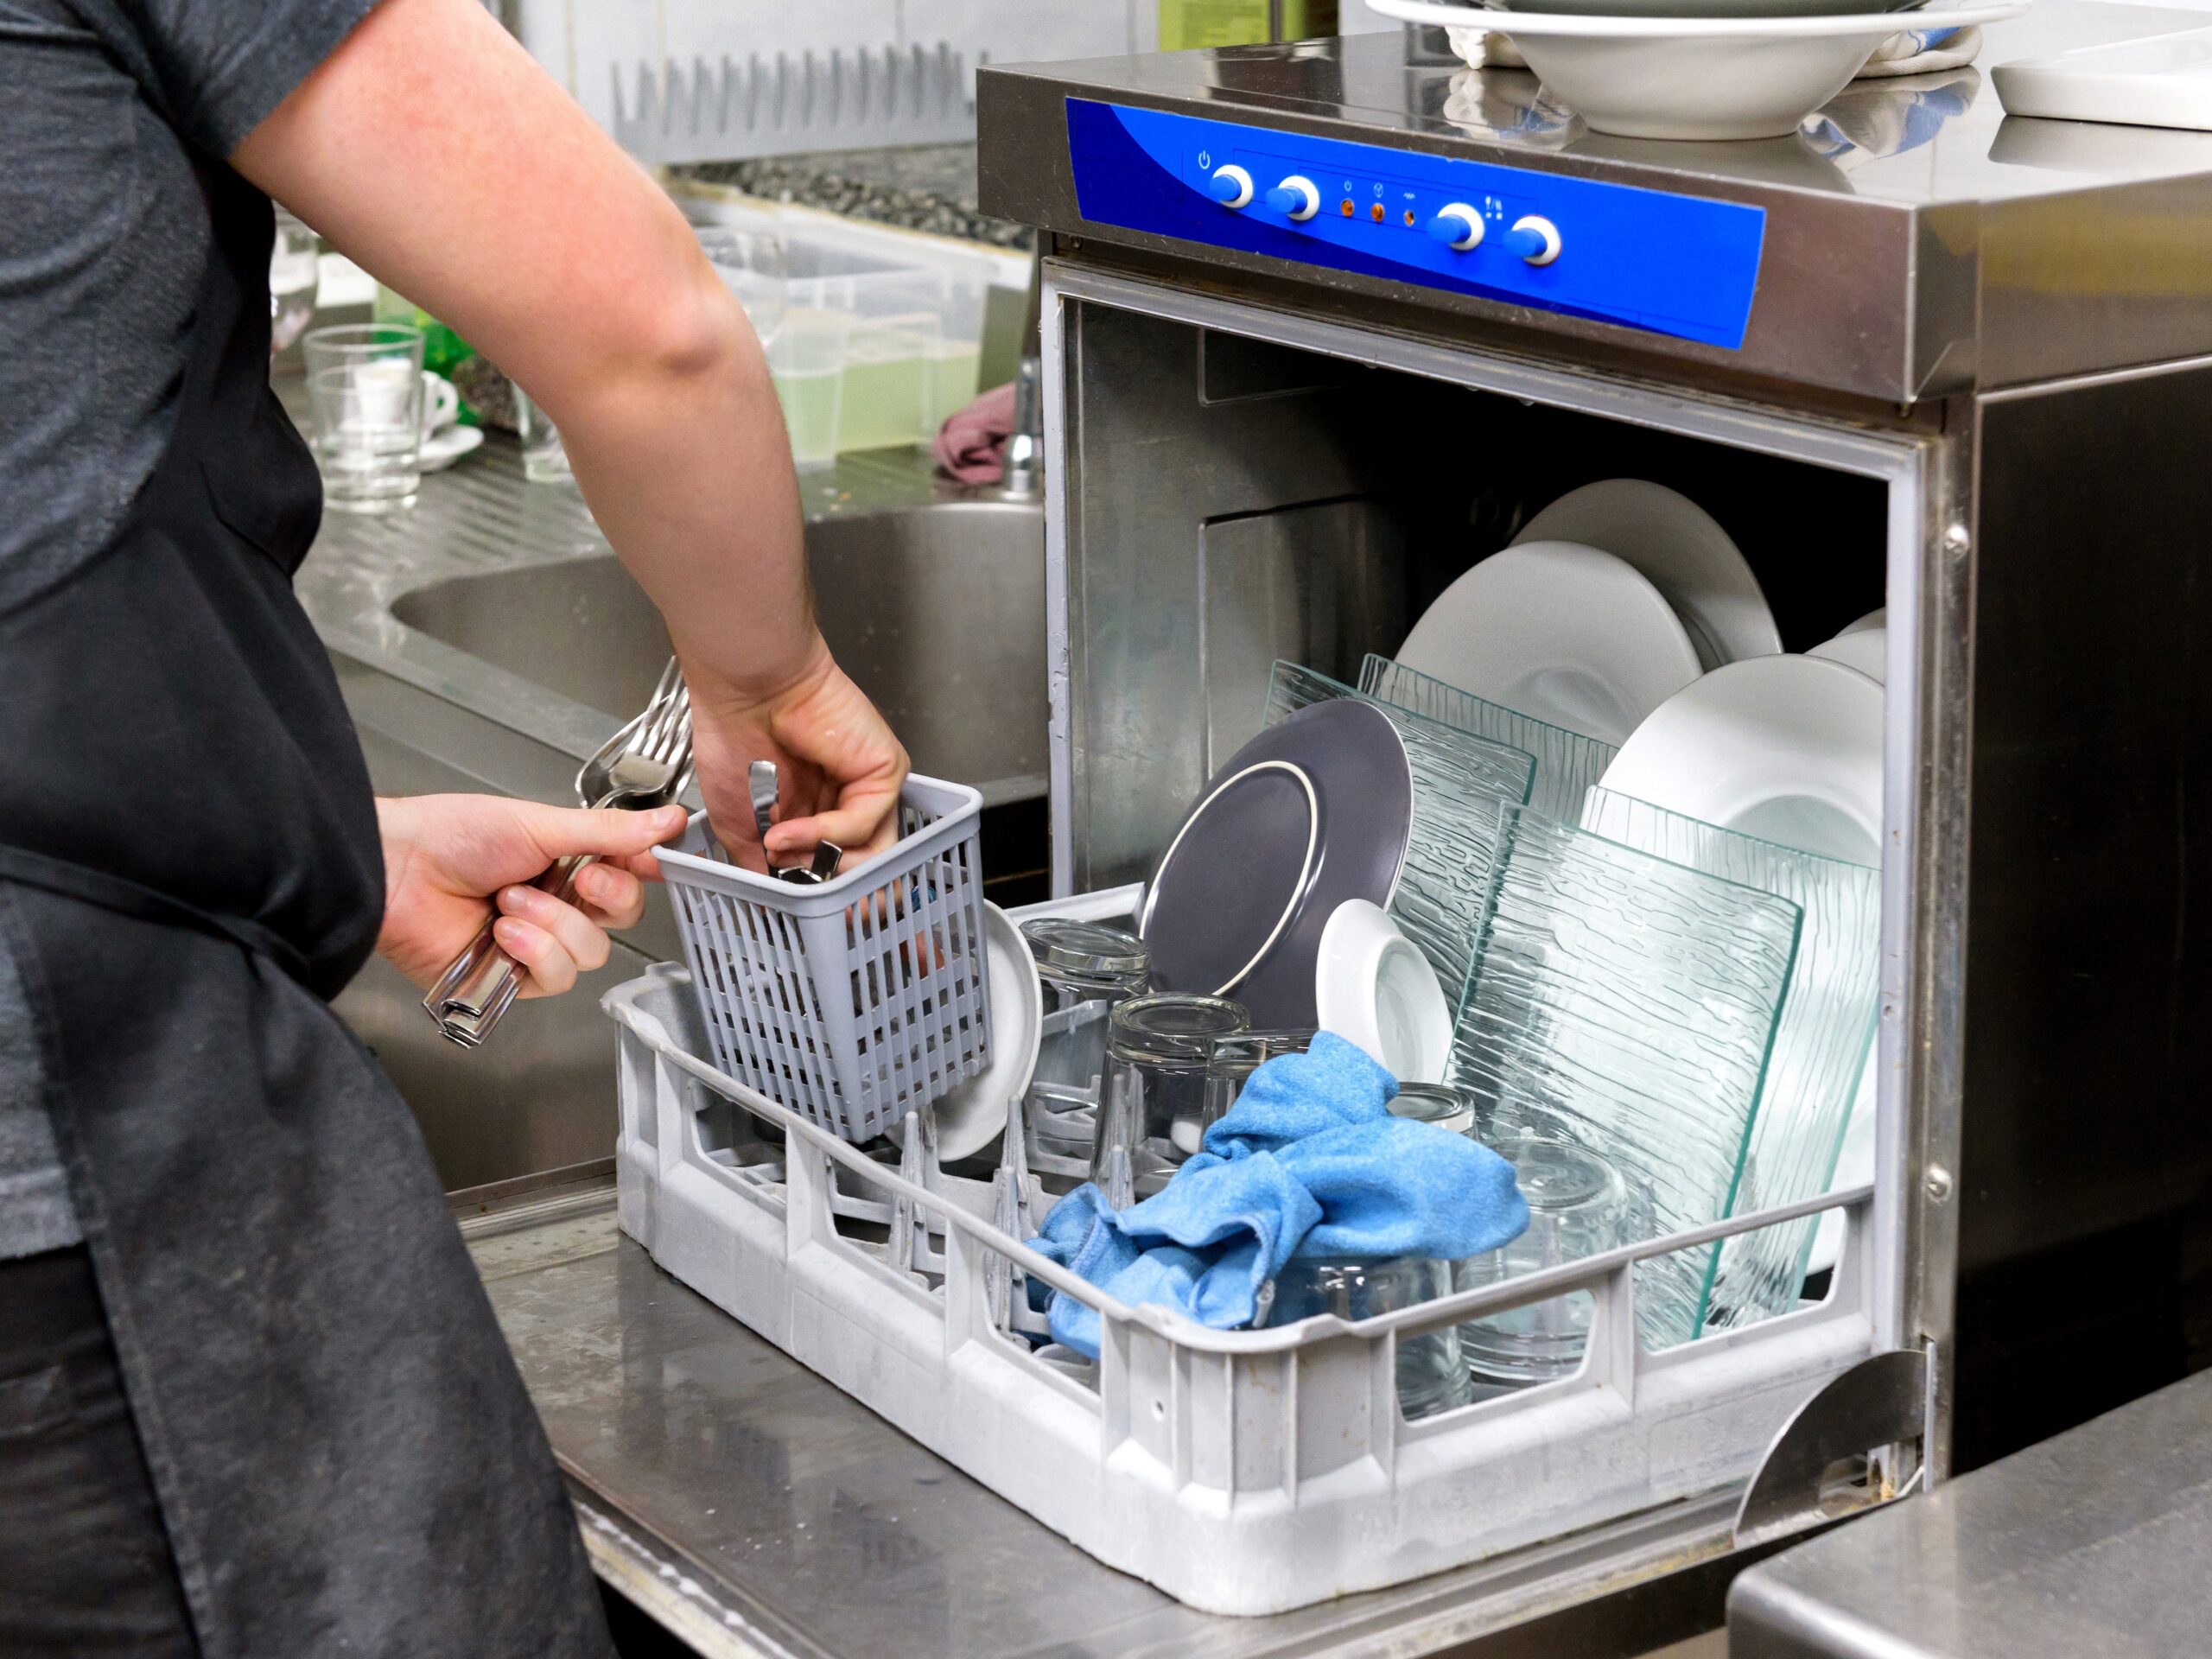 Restaurant kitchen worker emptying a dishwasher